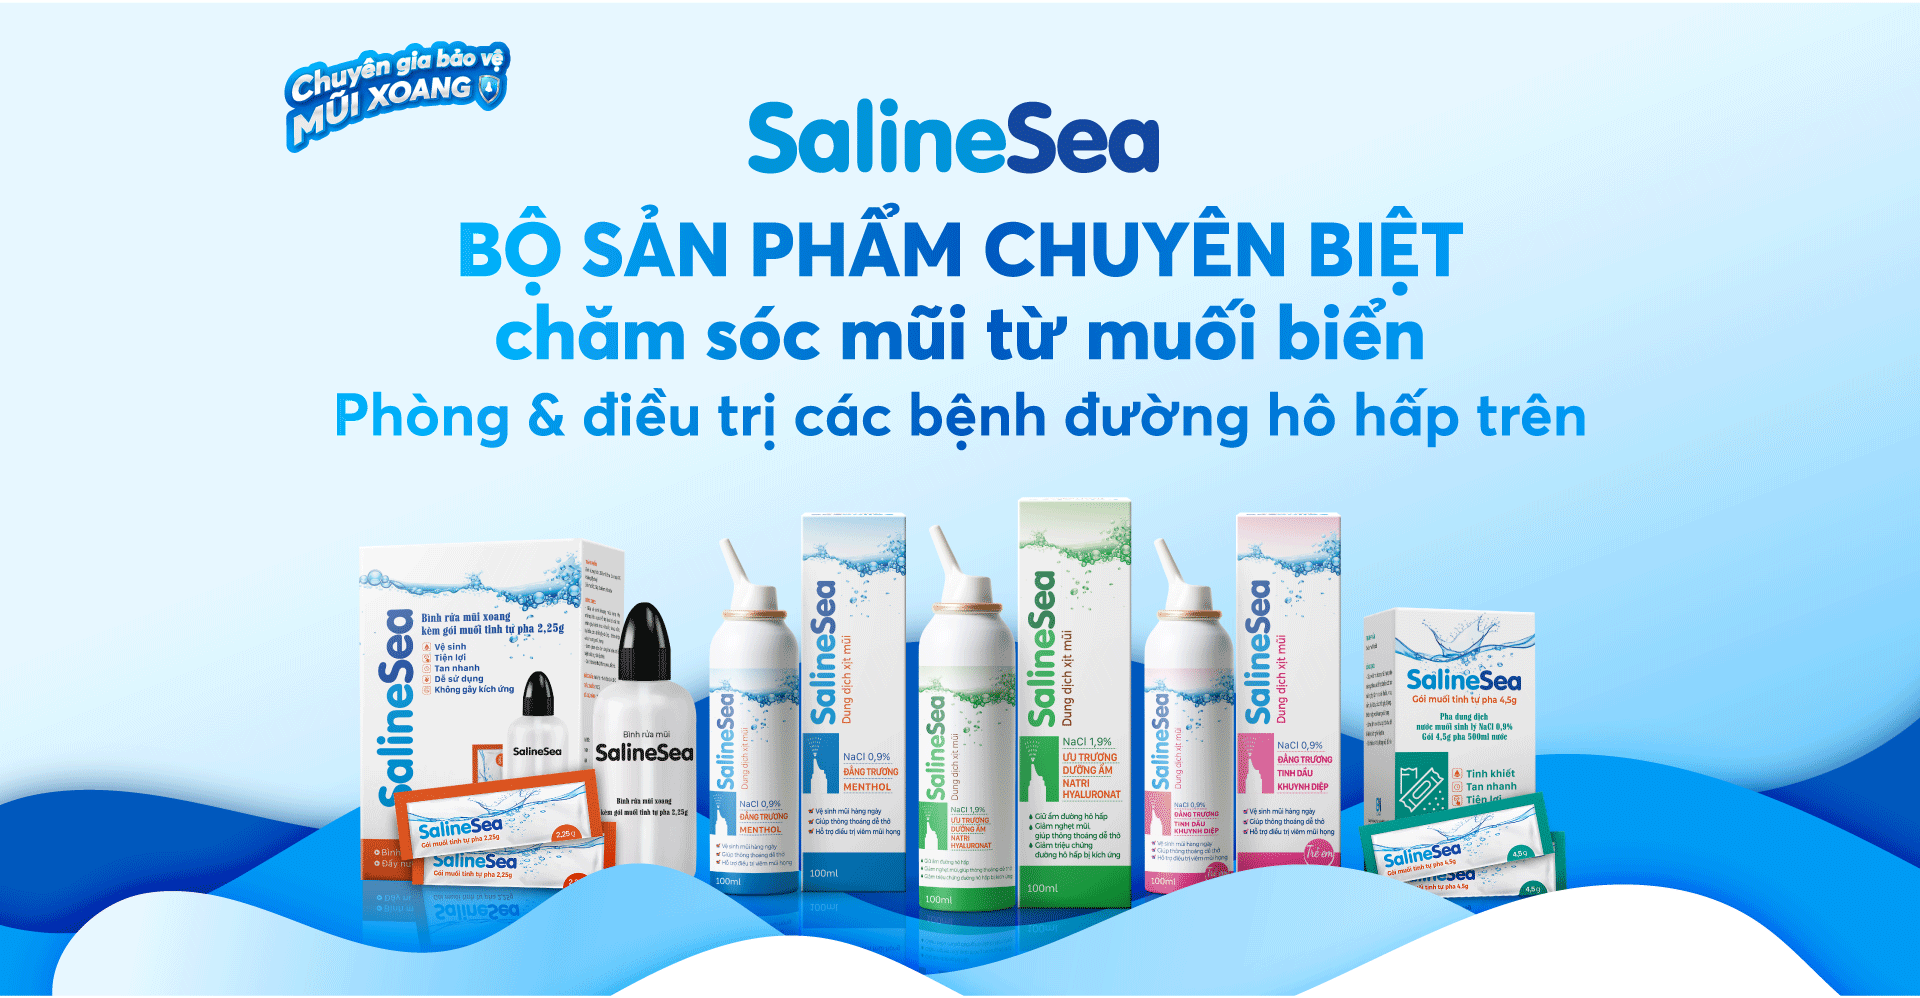 SalineSea - Biện pháp hỗ trợ phòng ngừa cúm A